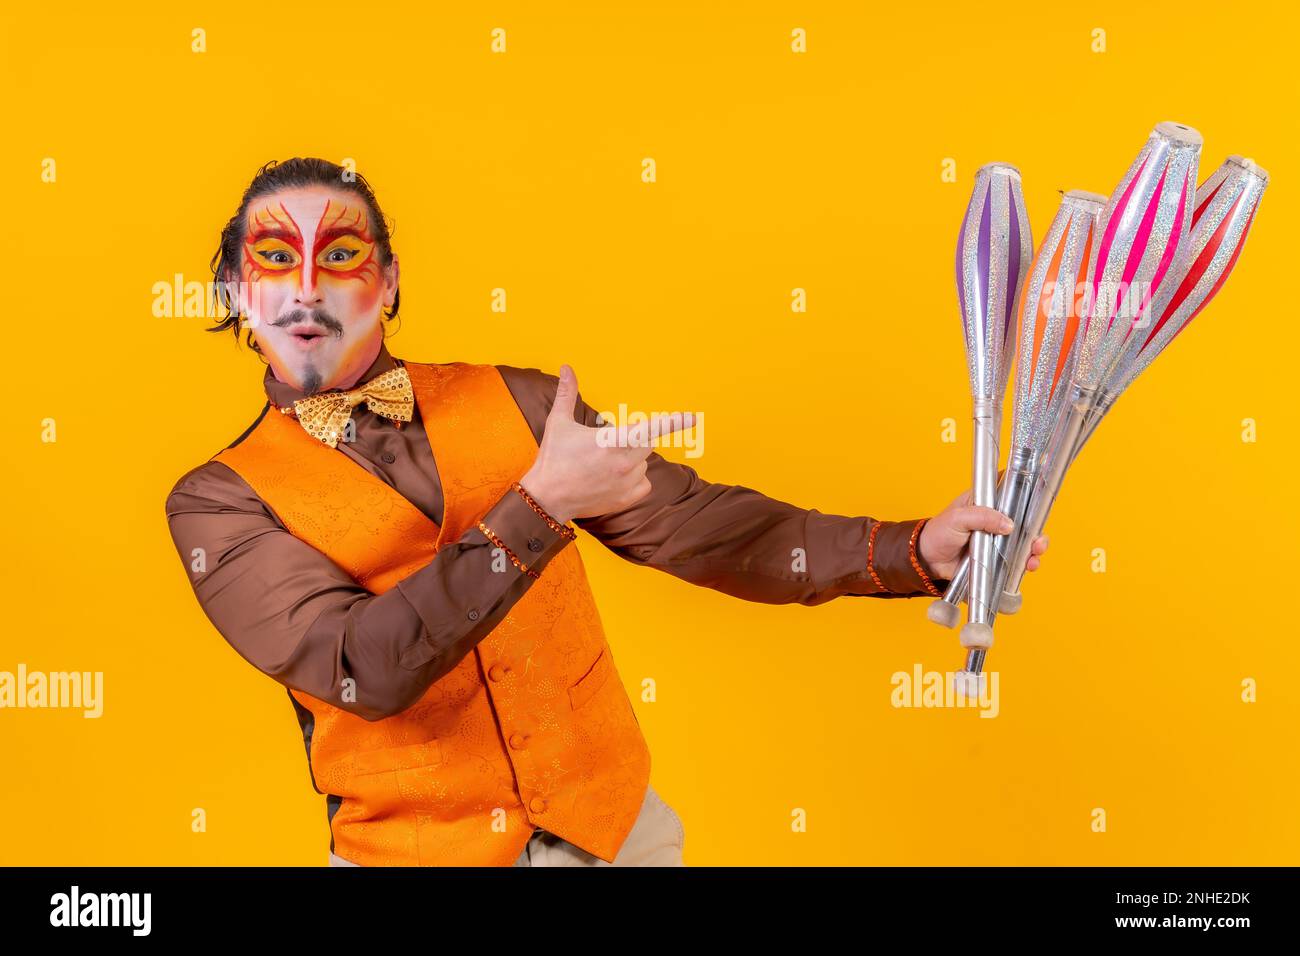 Porträt eines glücklichen Jongleurs in Make-up-Weste, der mit Maces auf gelbem Hintergrund jongliert Stockfoto